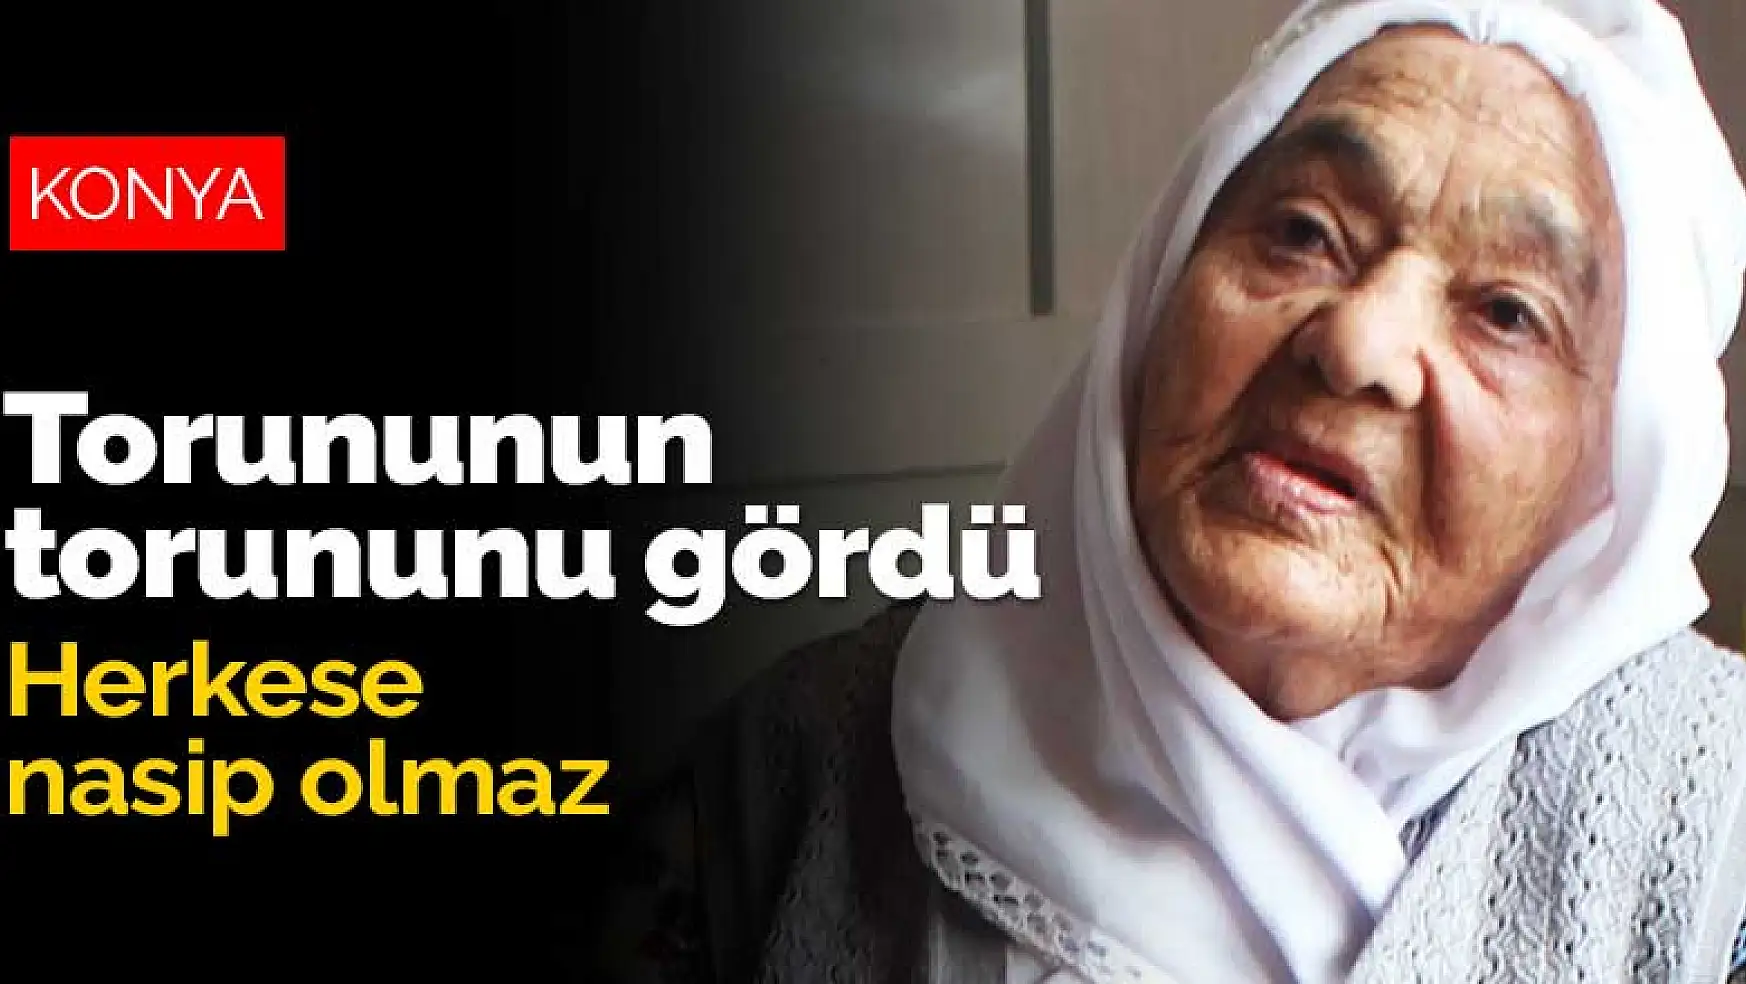 Konya'da yaşayan 101 yaşındaki Saadet nine torununun torununu gördü